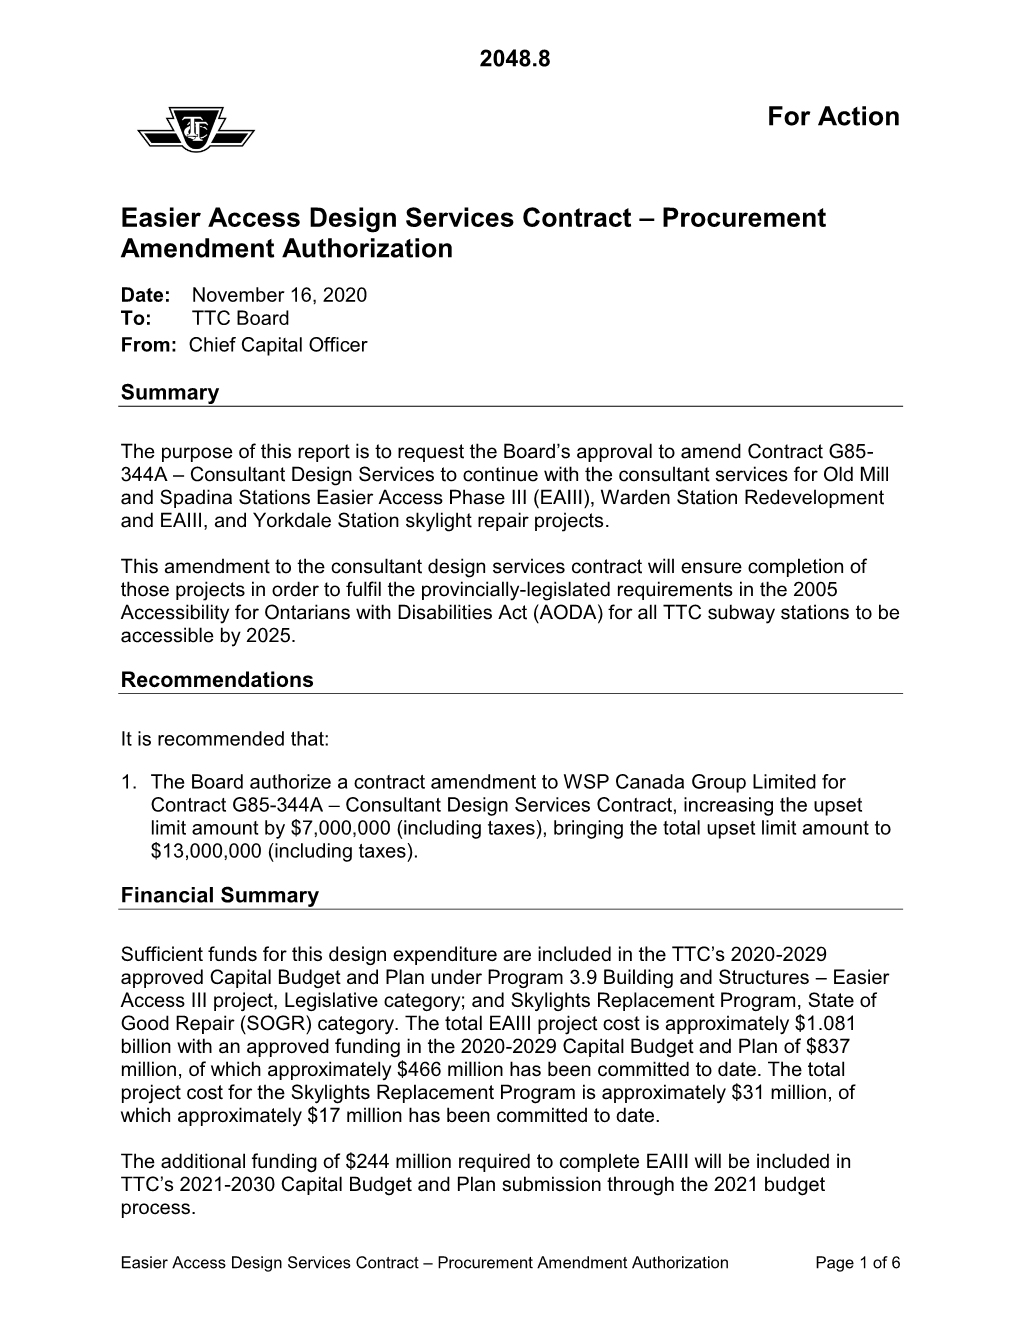 Easier Access Design Services Contract – Procurement Amendment Authorization